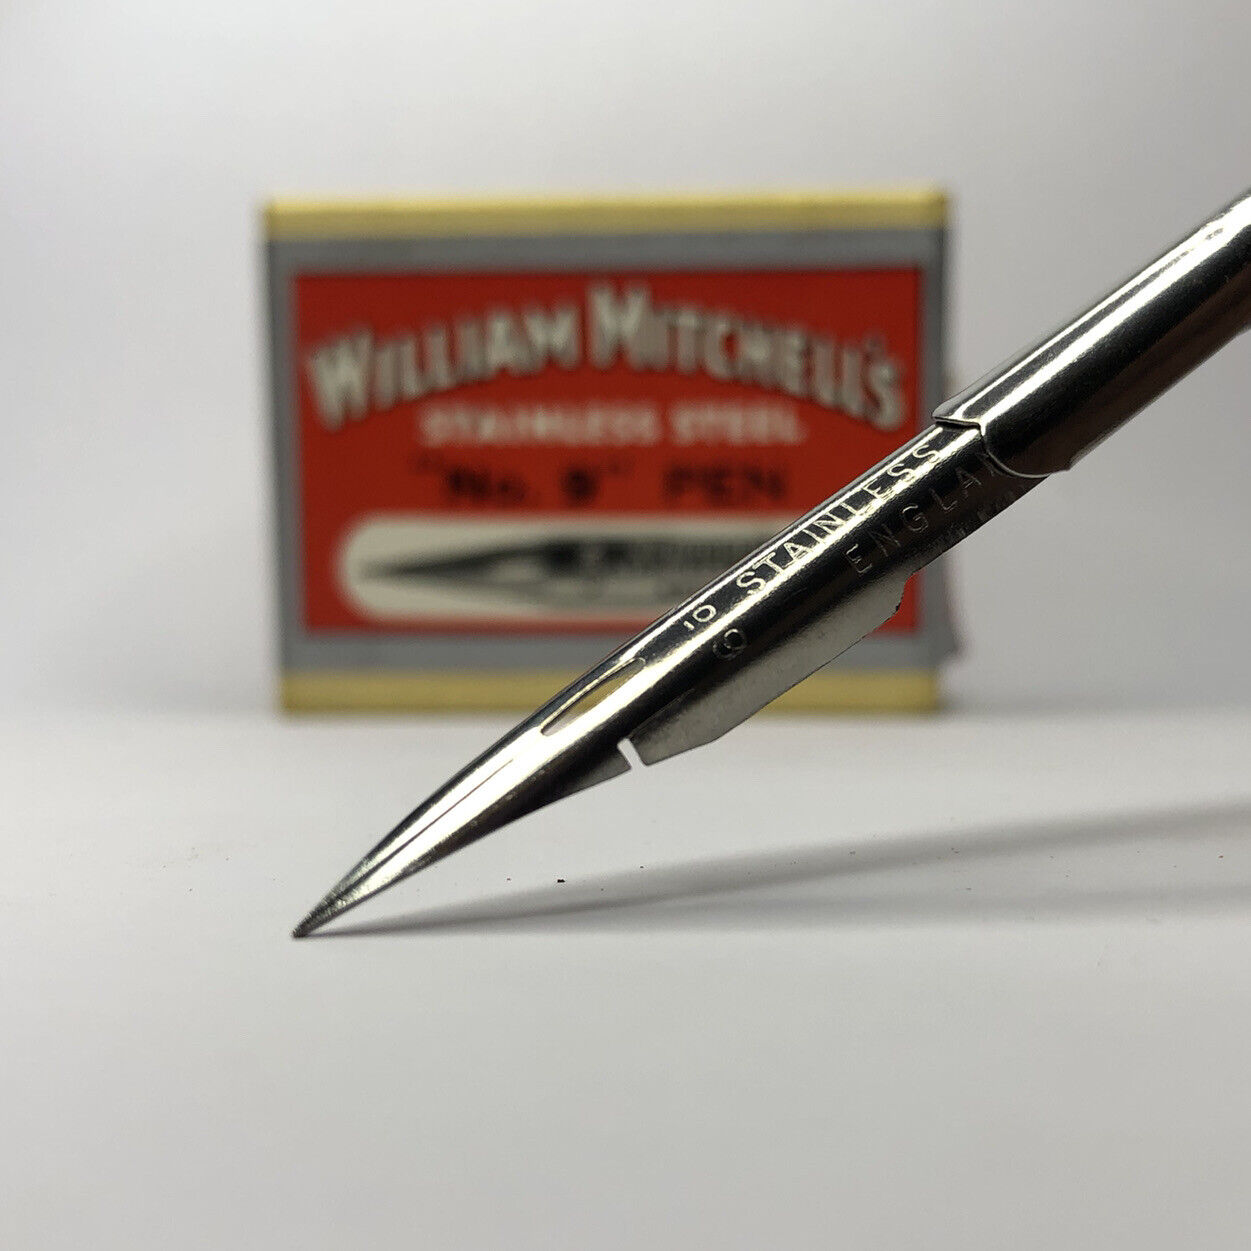 x2 William Mitchell's Stainless Steel "No.9" Pen 0221 Fine Nib Vintage Dip Pen William Mitchell - фотография #6